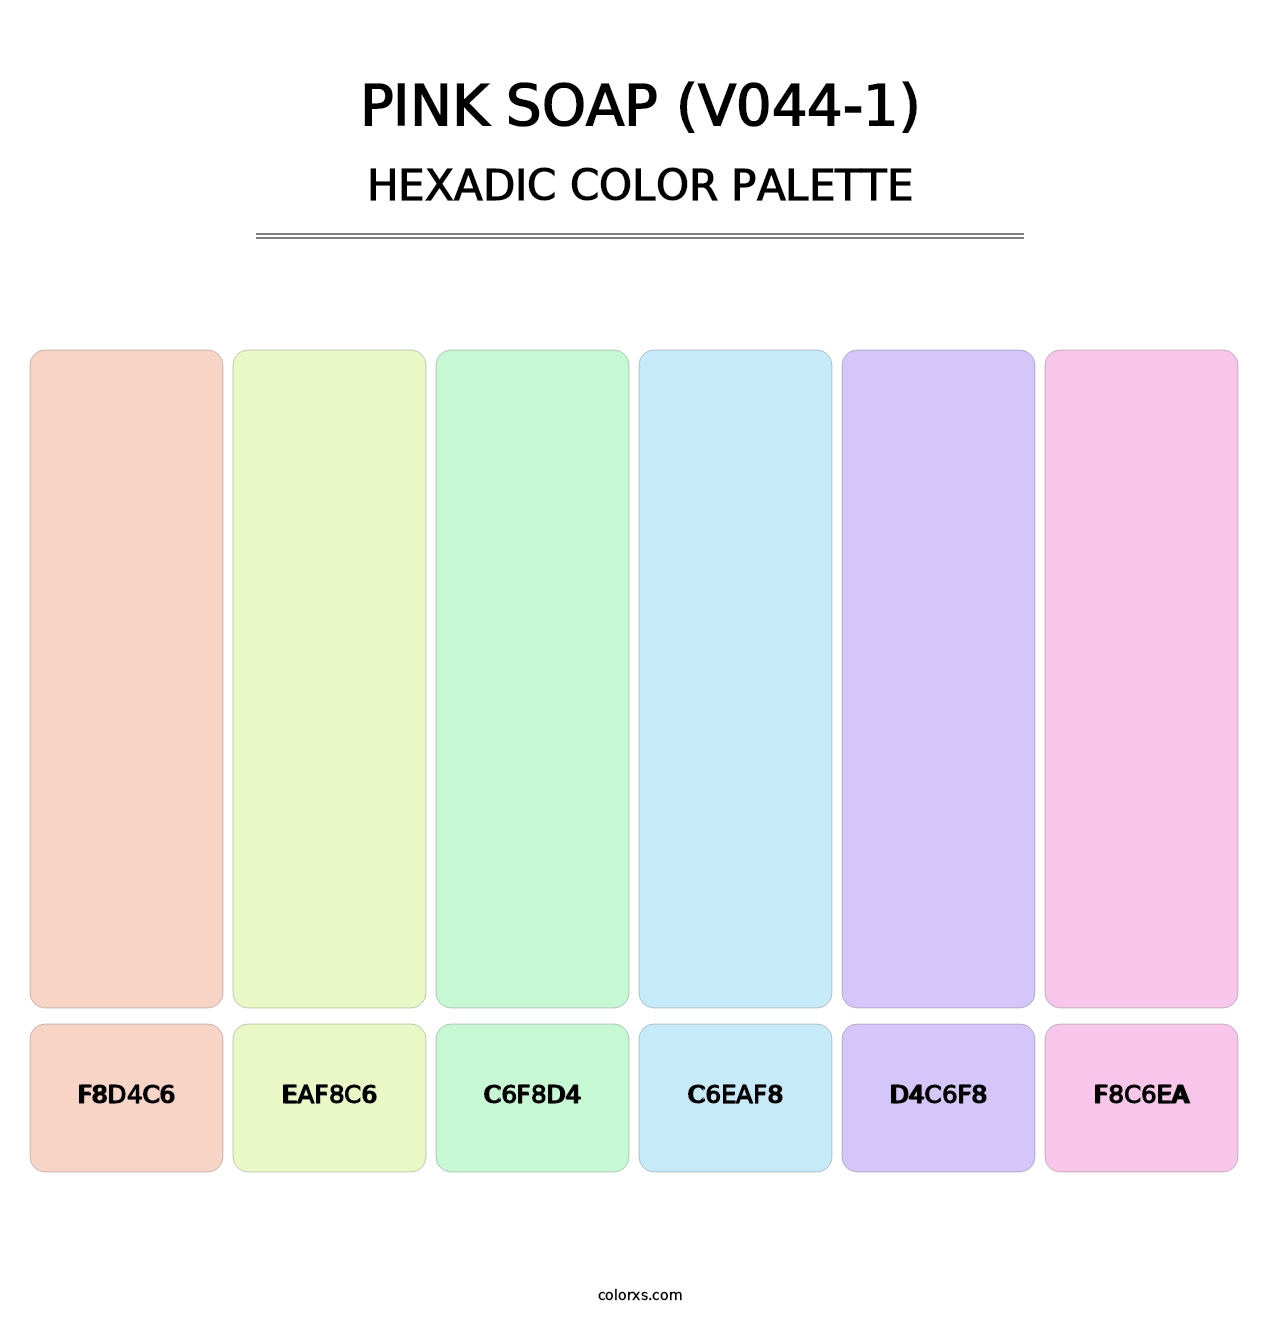 Pink Soap (V044-1) - Hexadic Color Palette